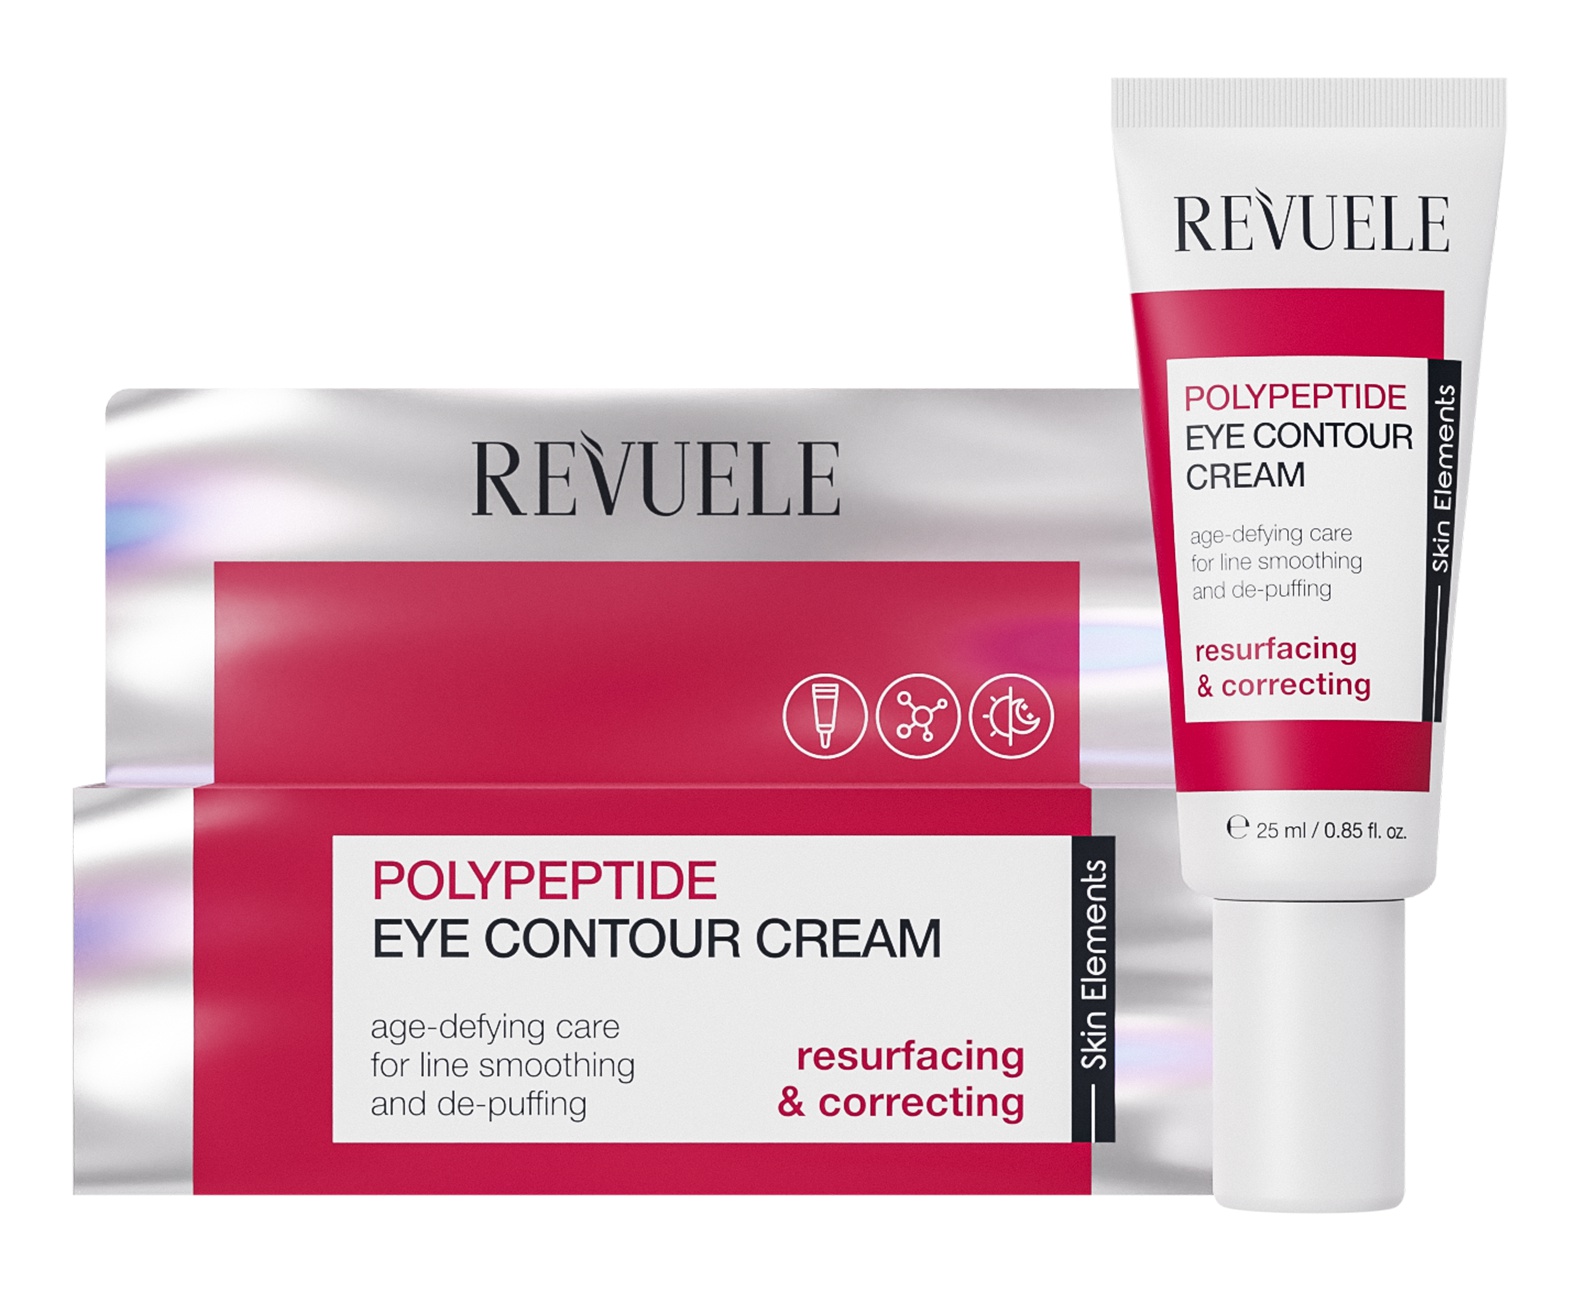 Revuele Polypeptide Eye Contour Cream